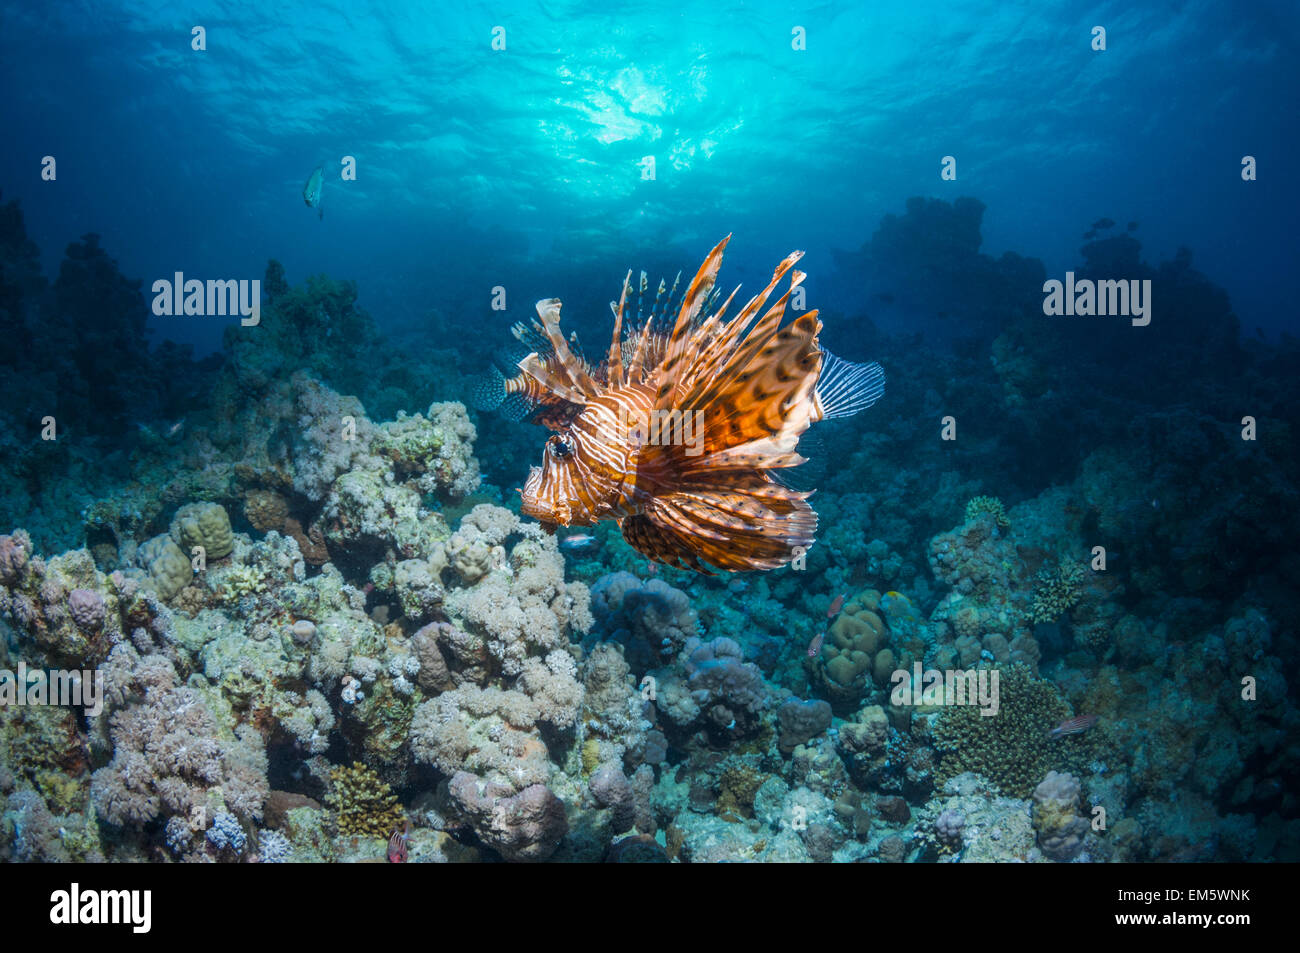 Poisson-papillon commun ou devil firefish (Pterois miles). Souvent confondu avec poisson-papillon rouge (Pterois volitans). Endémique de la Mer Rouge. Banque D'Images